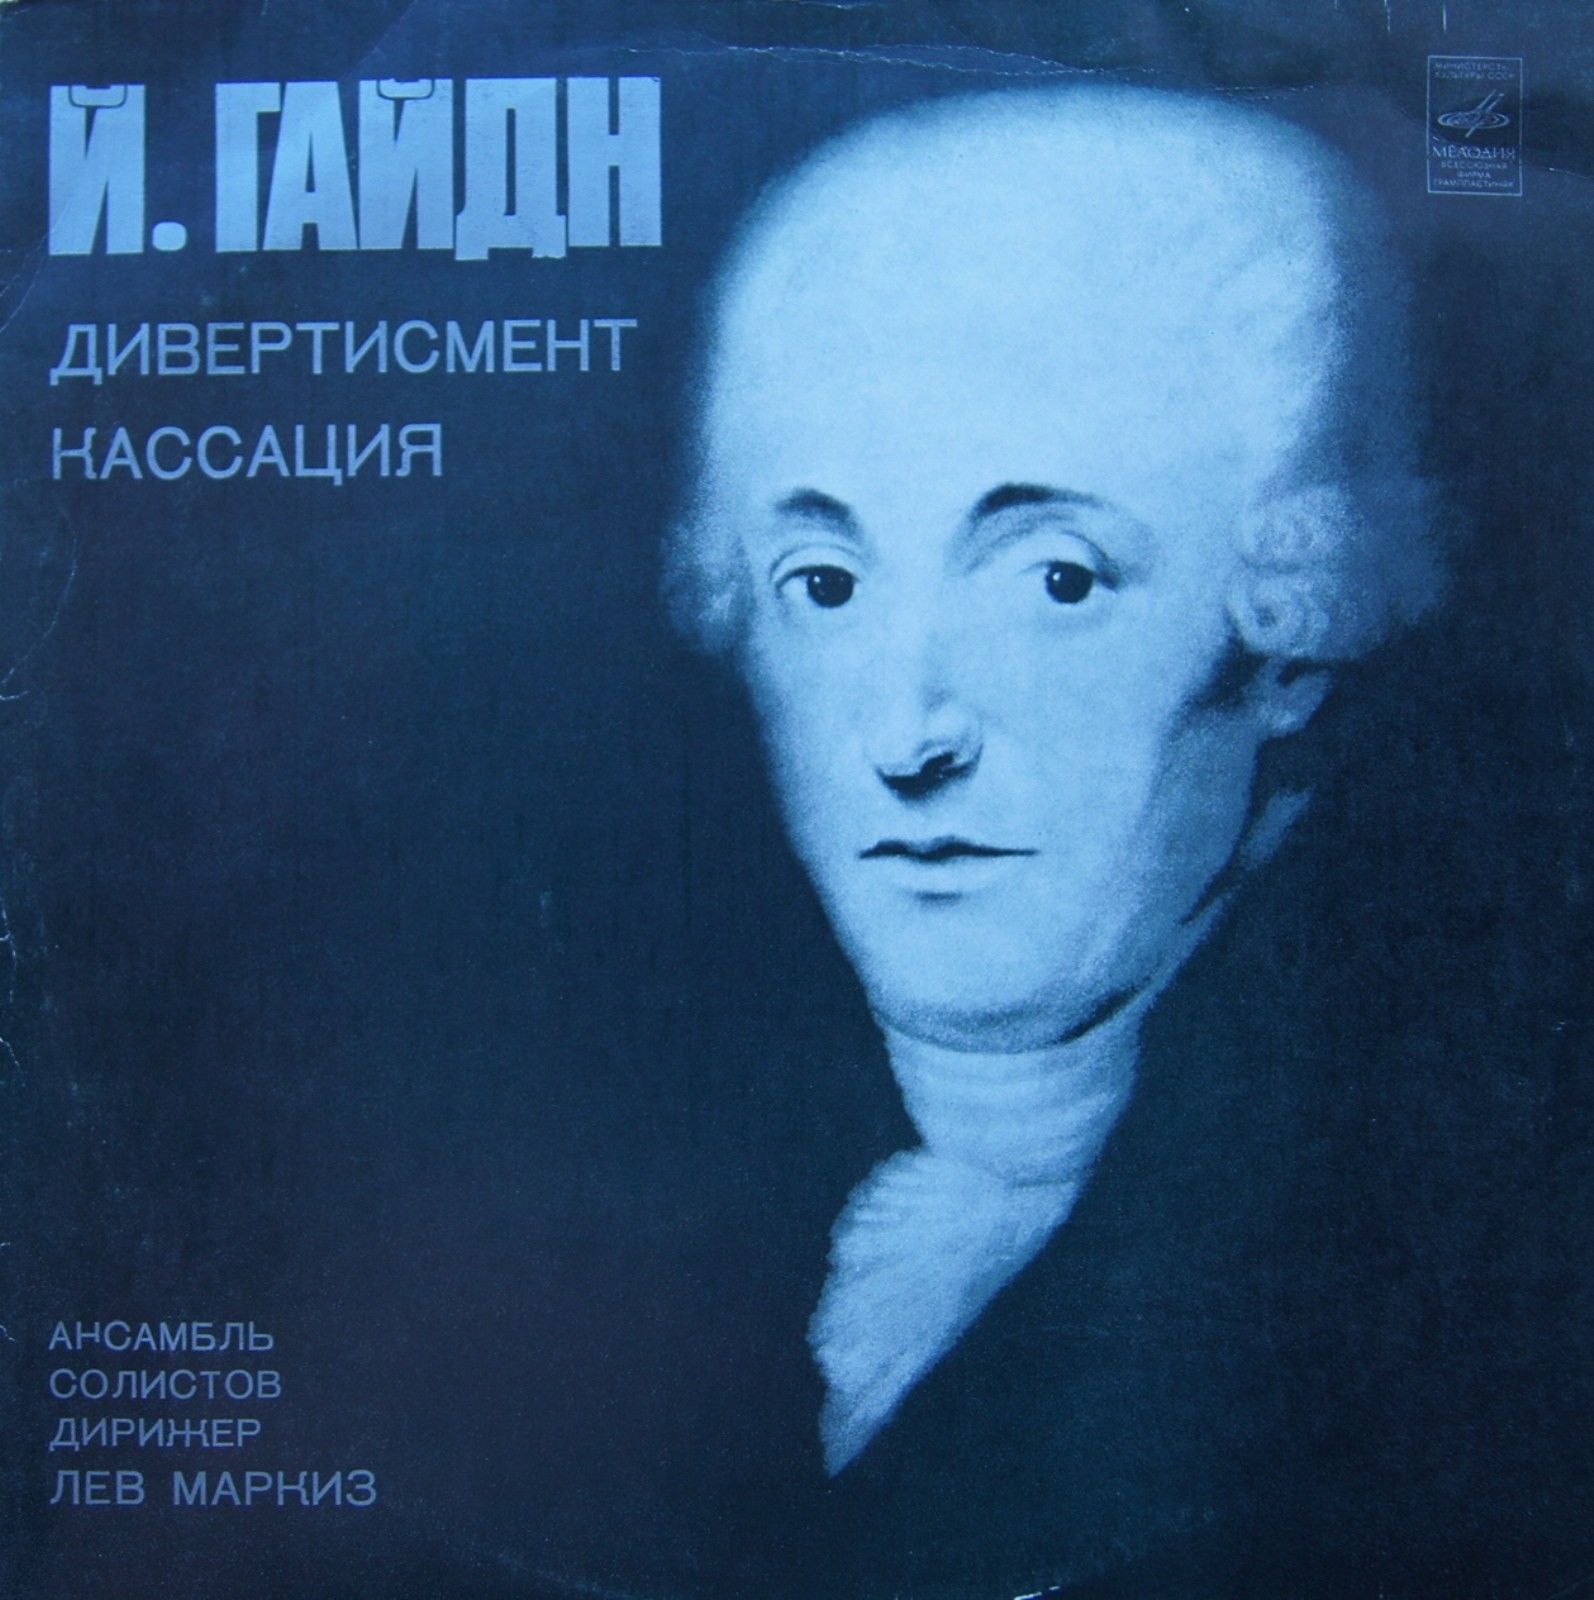 Й. ГАЙДН (1732-1809)